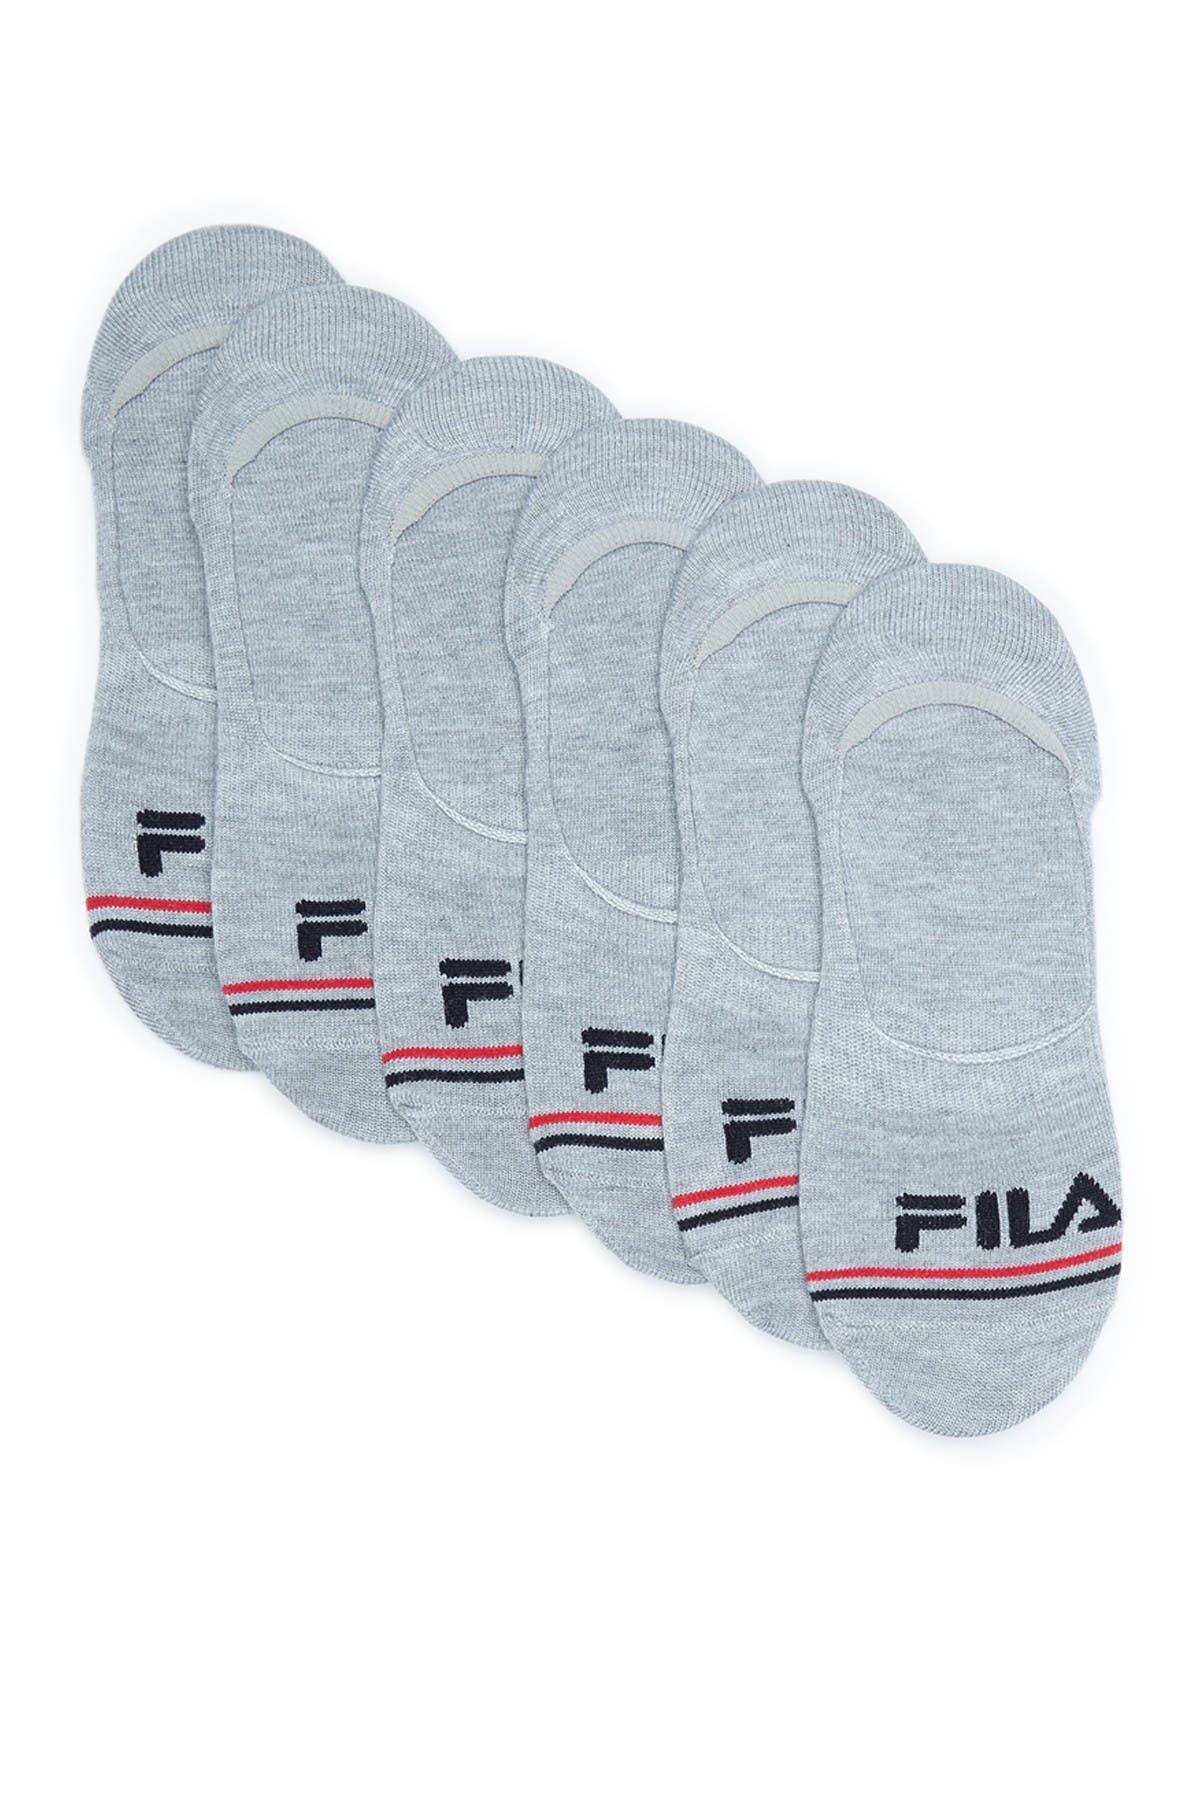 FILA USA Liner Socks – Pack of 6 for $4.99 (68% off)